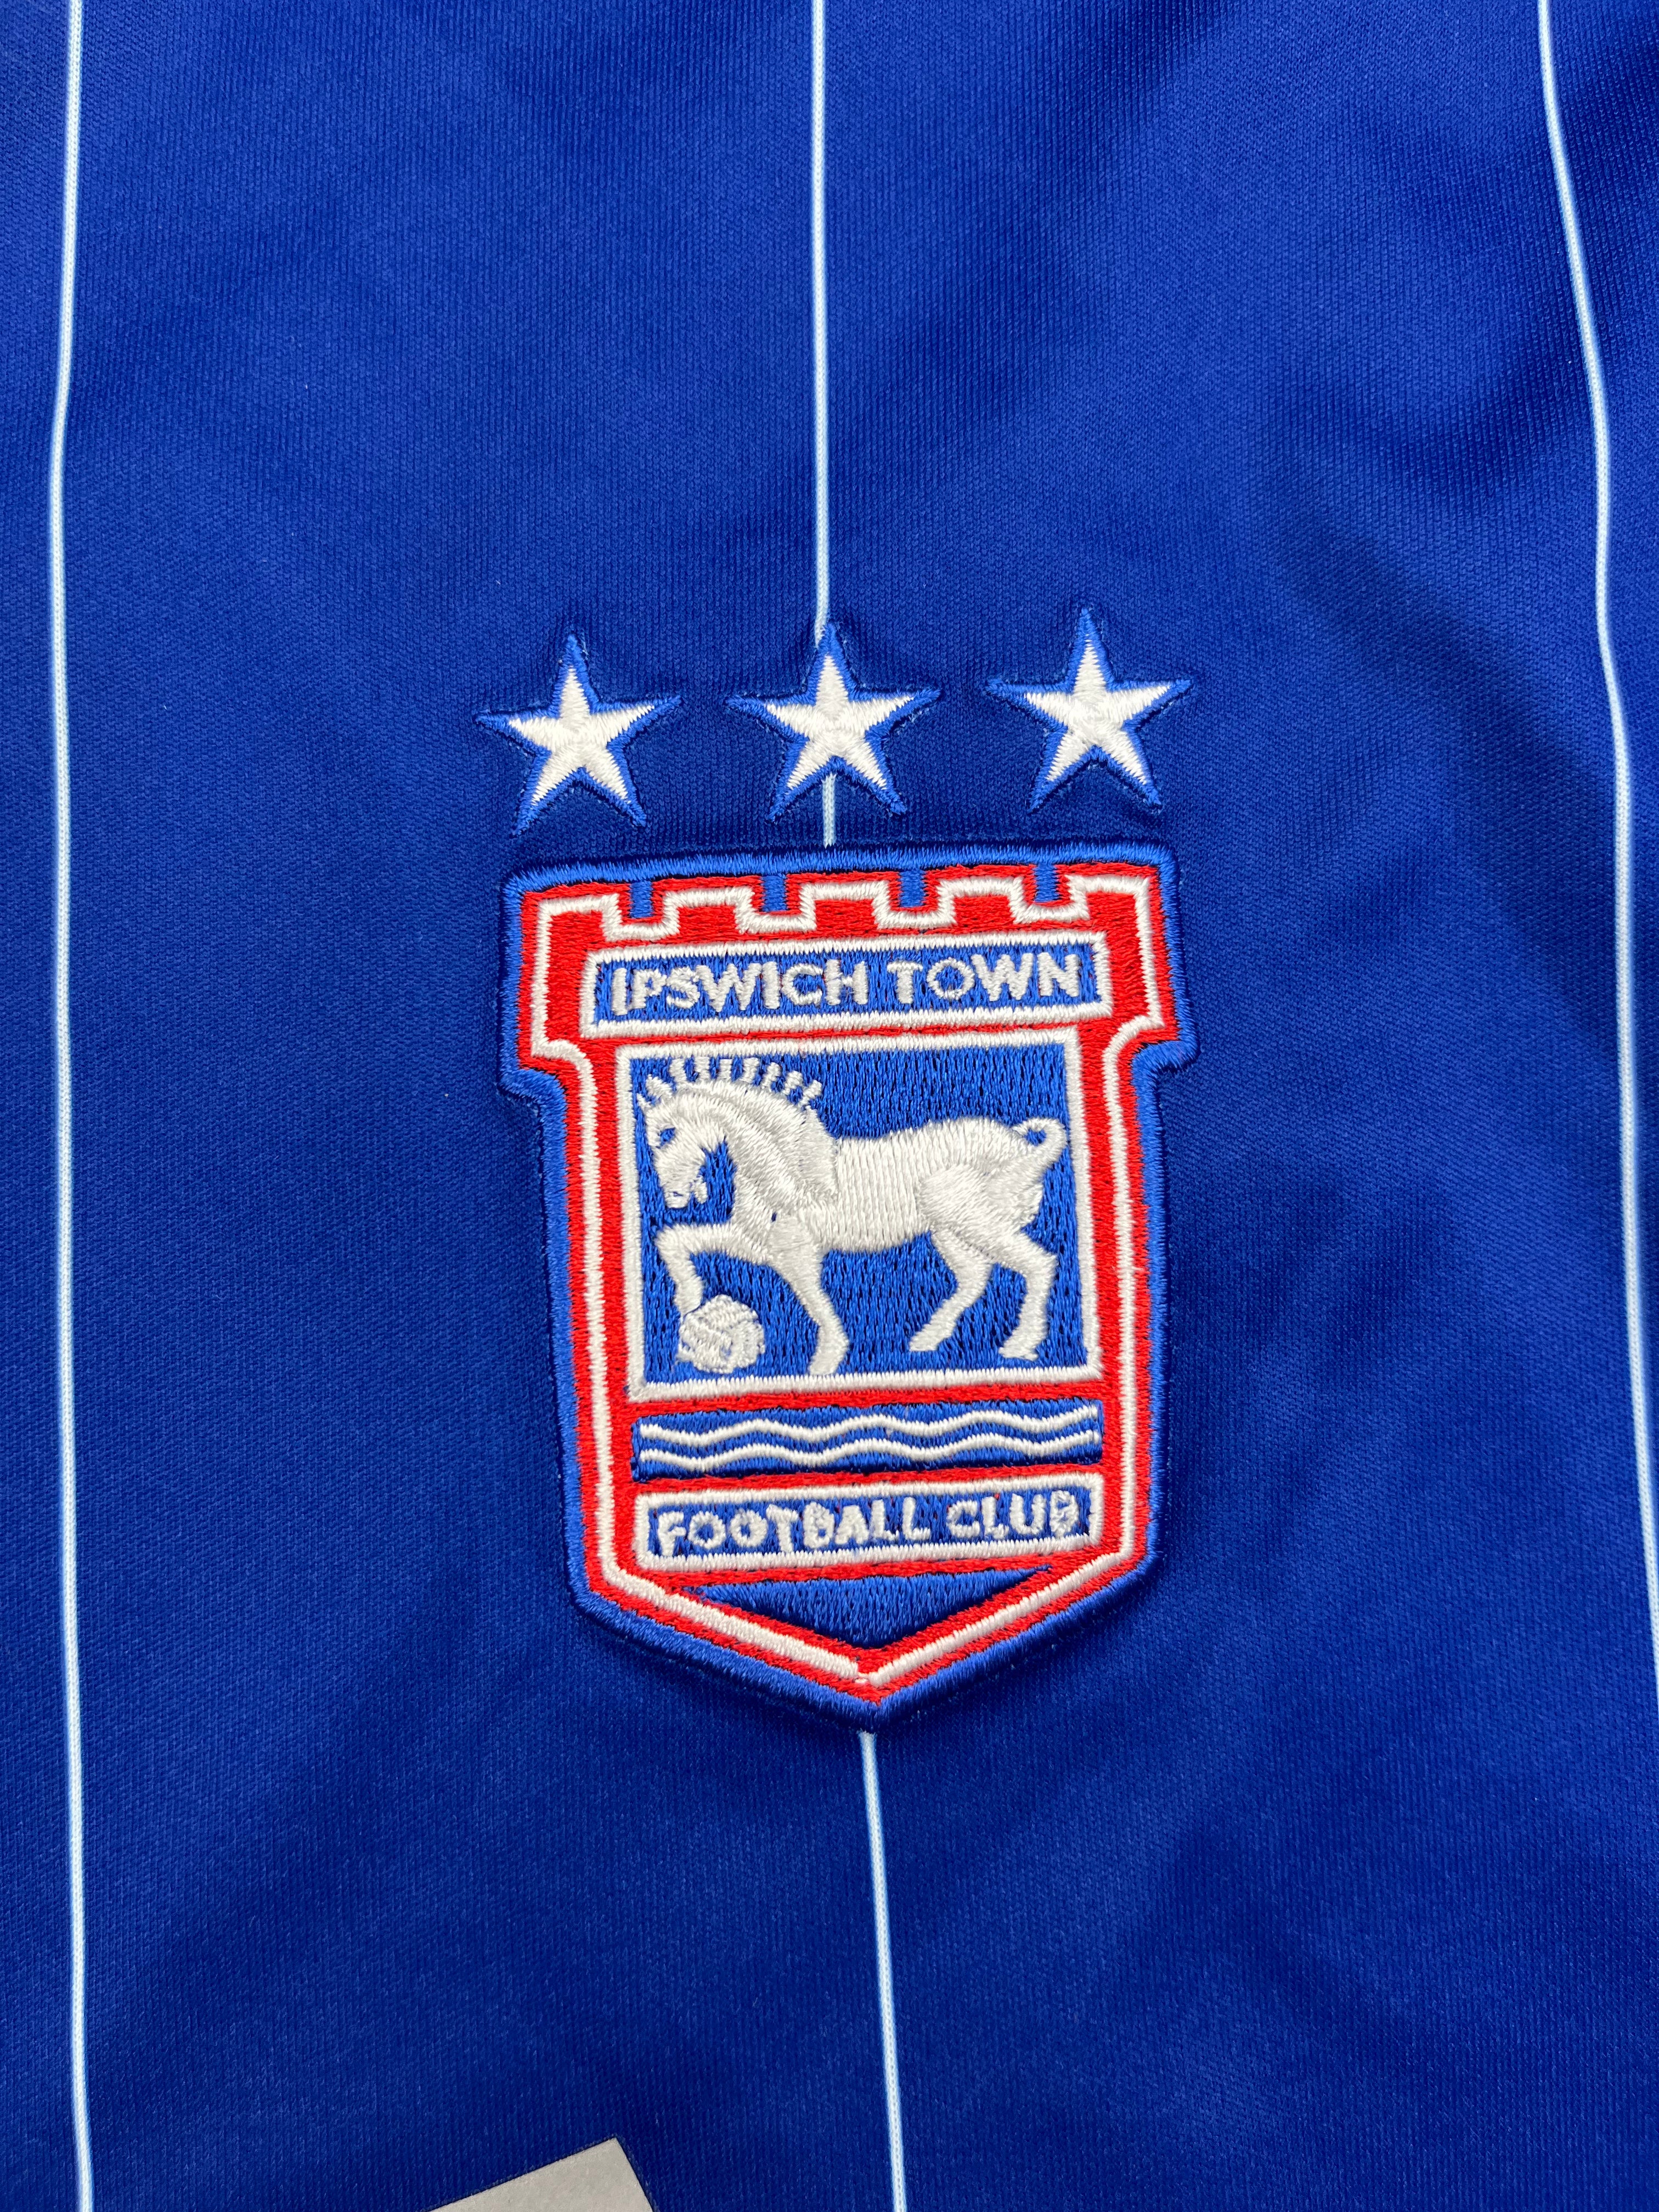 2015/16 Ipswich Town Home Shirt (XL) 9/10